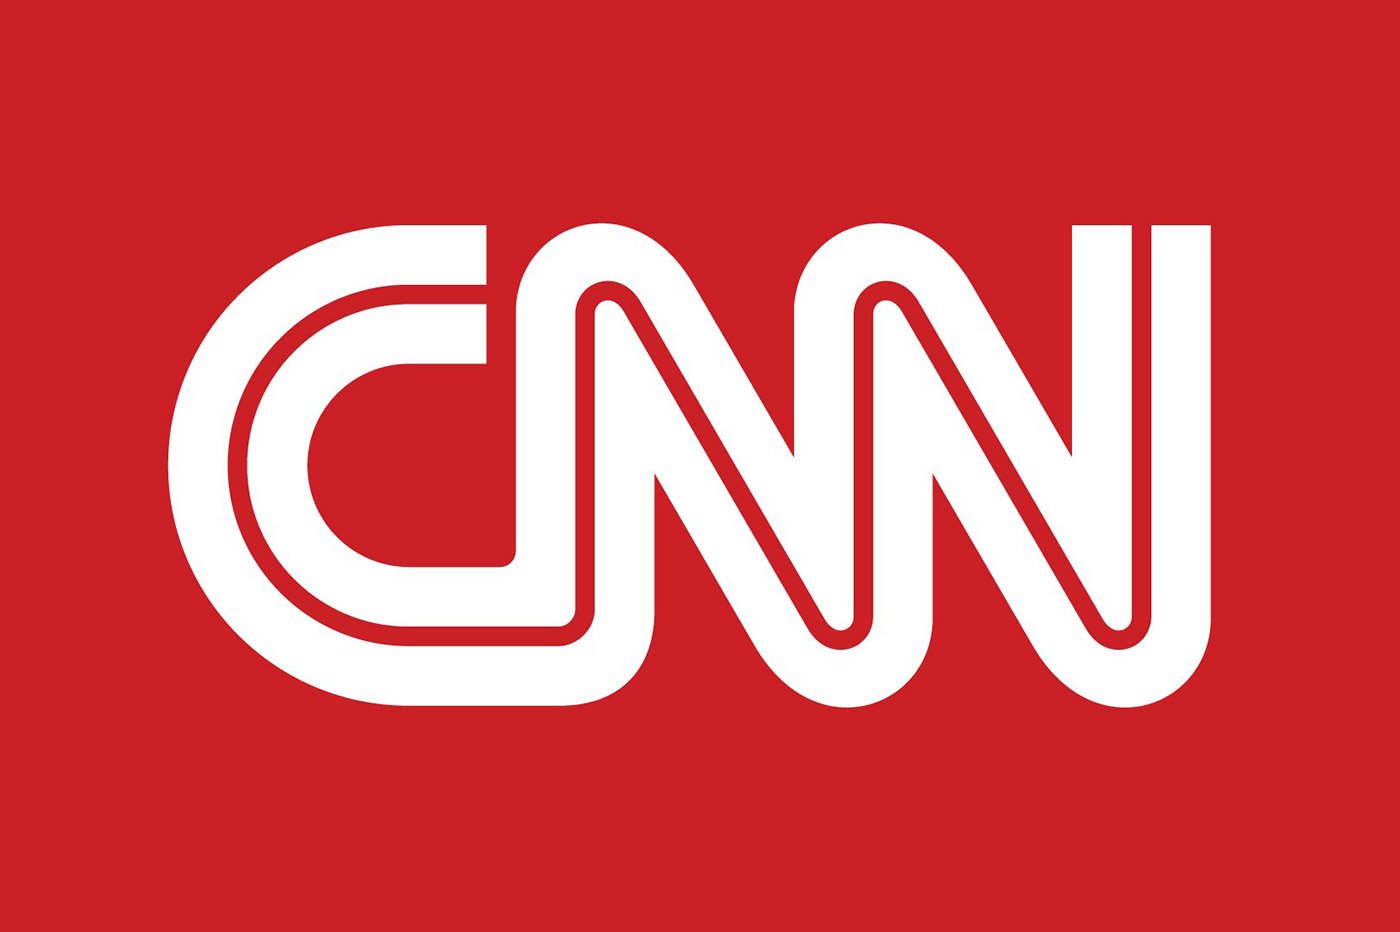 cnn-logo-white-on-red